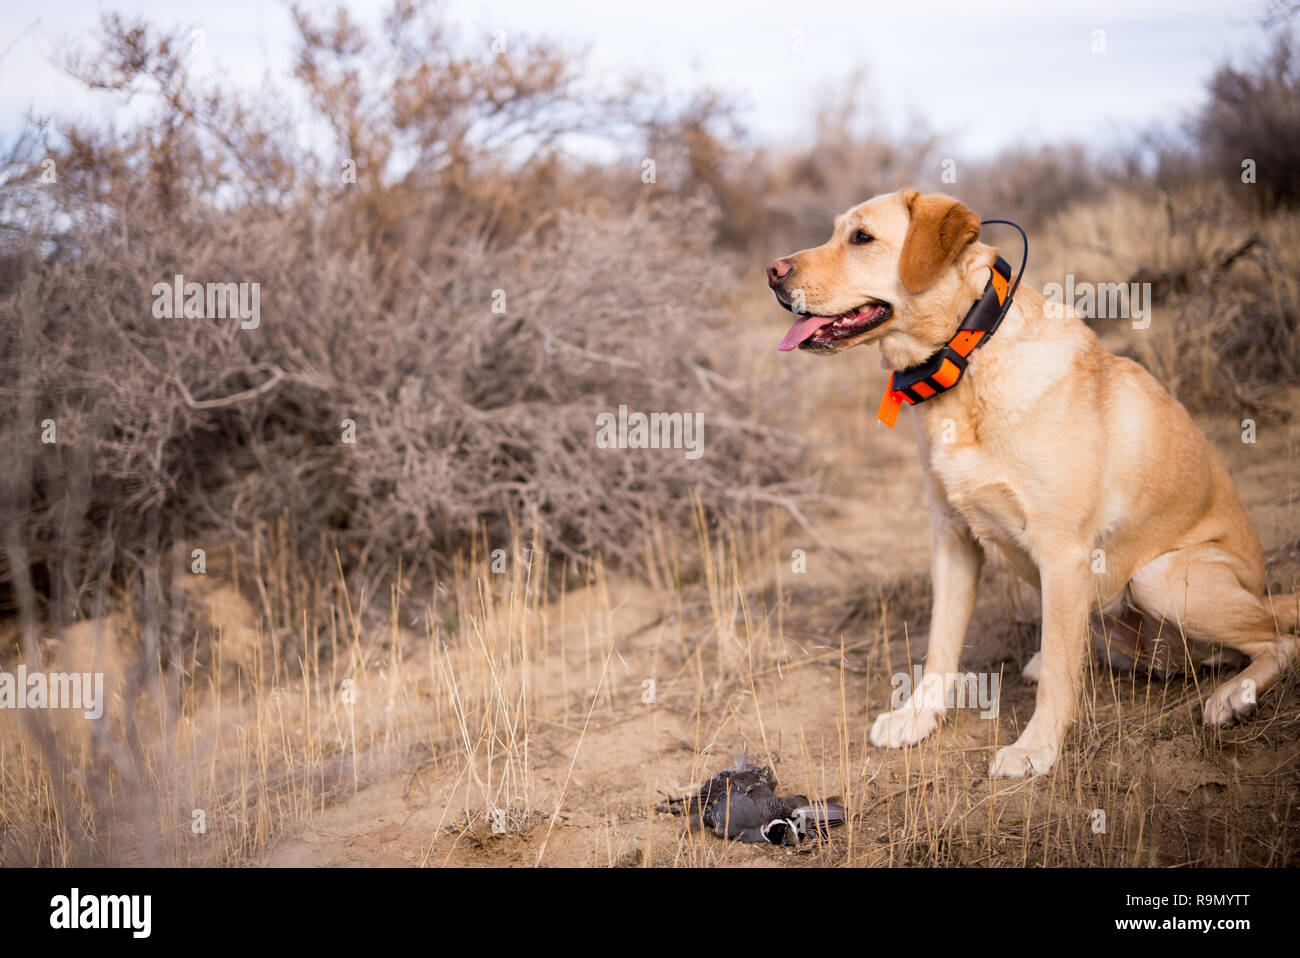 yellow lab hunting dog